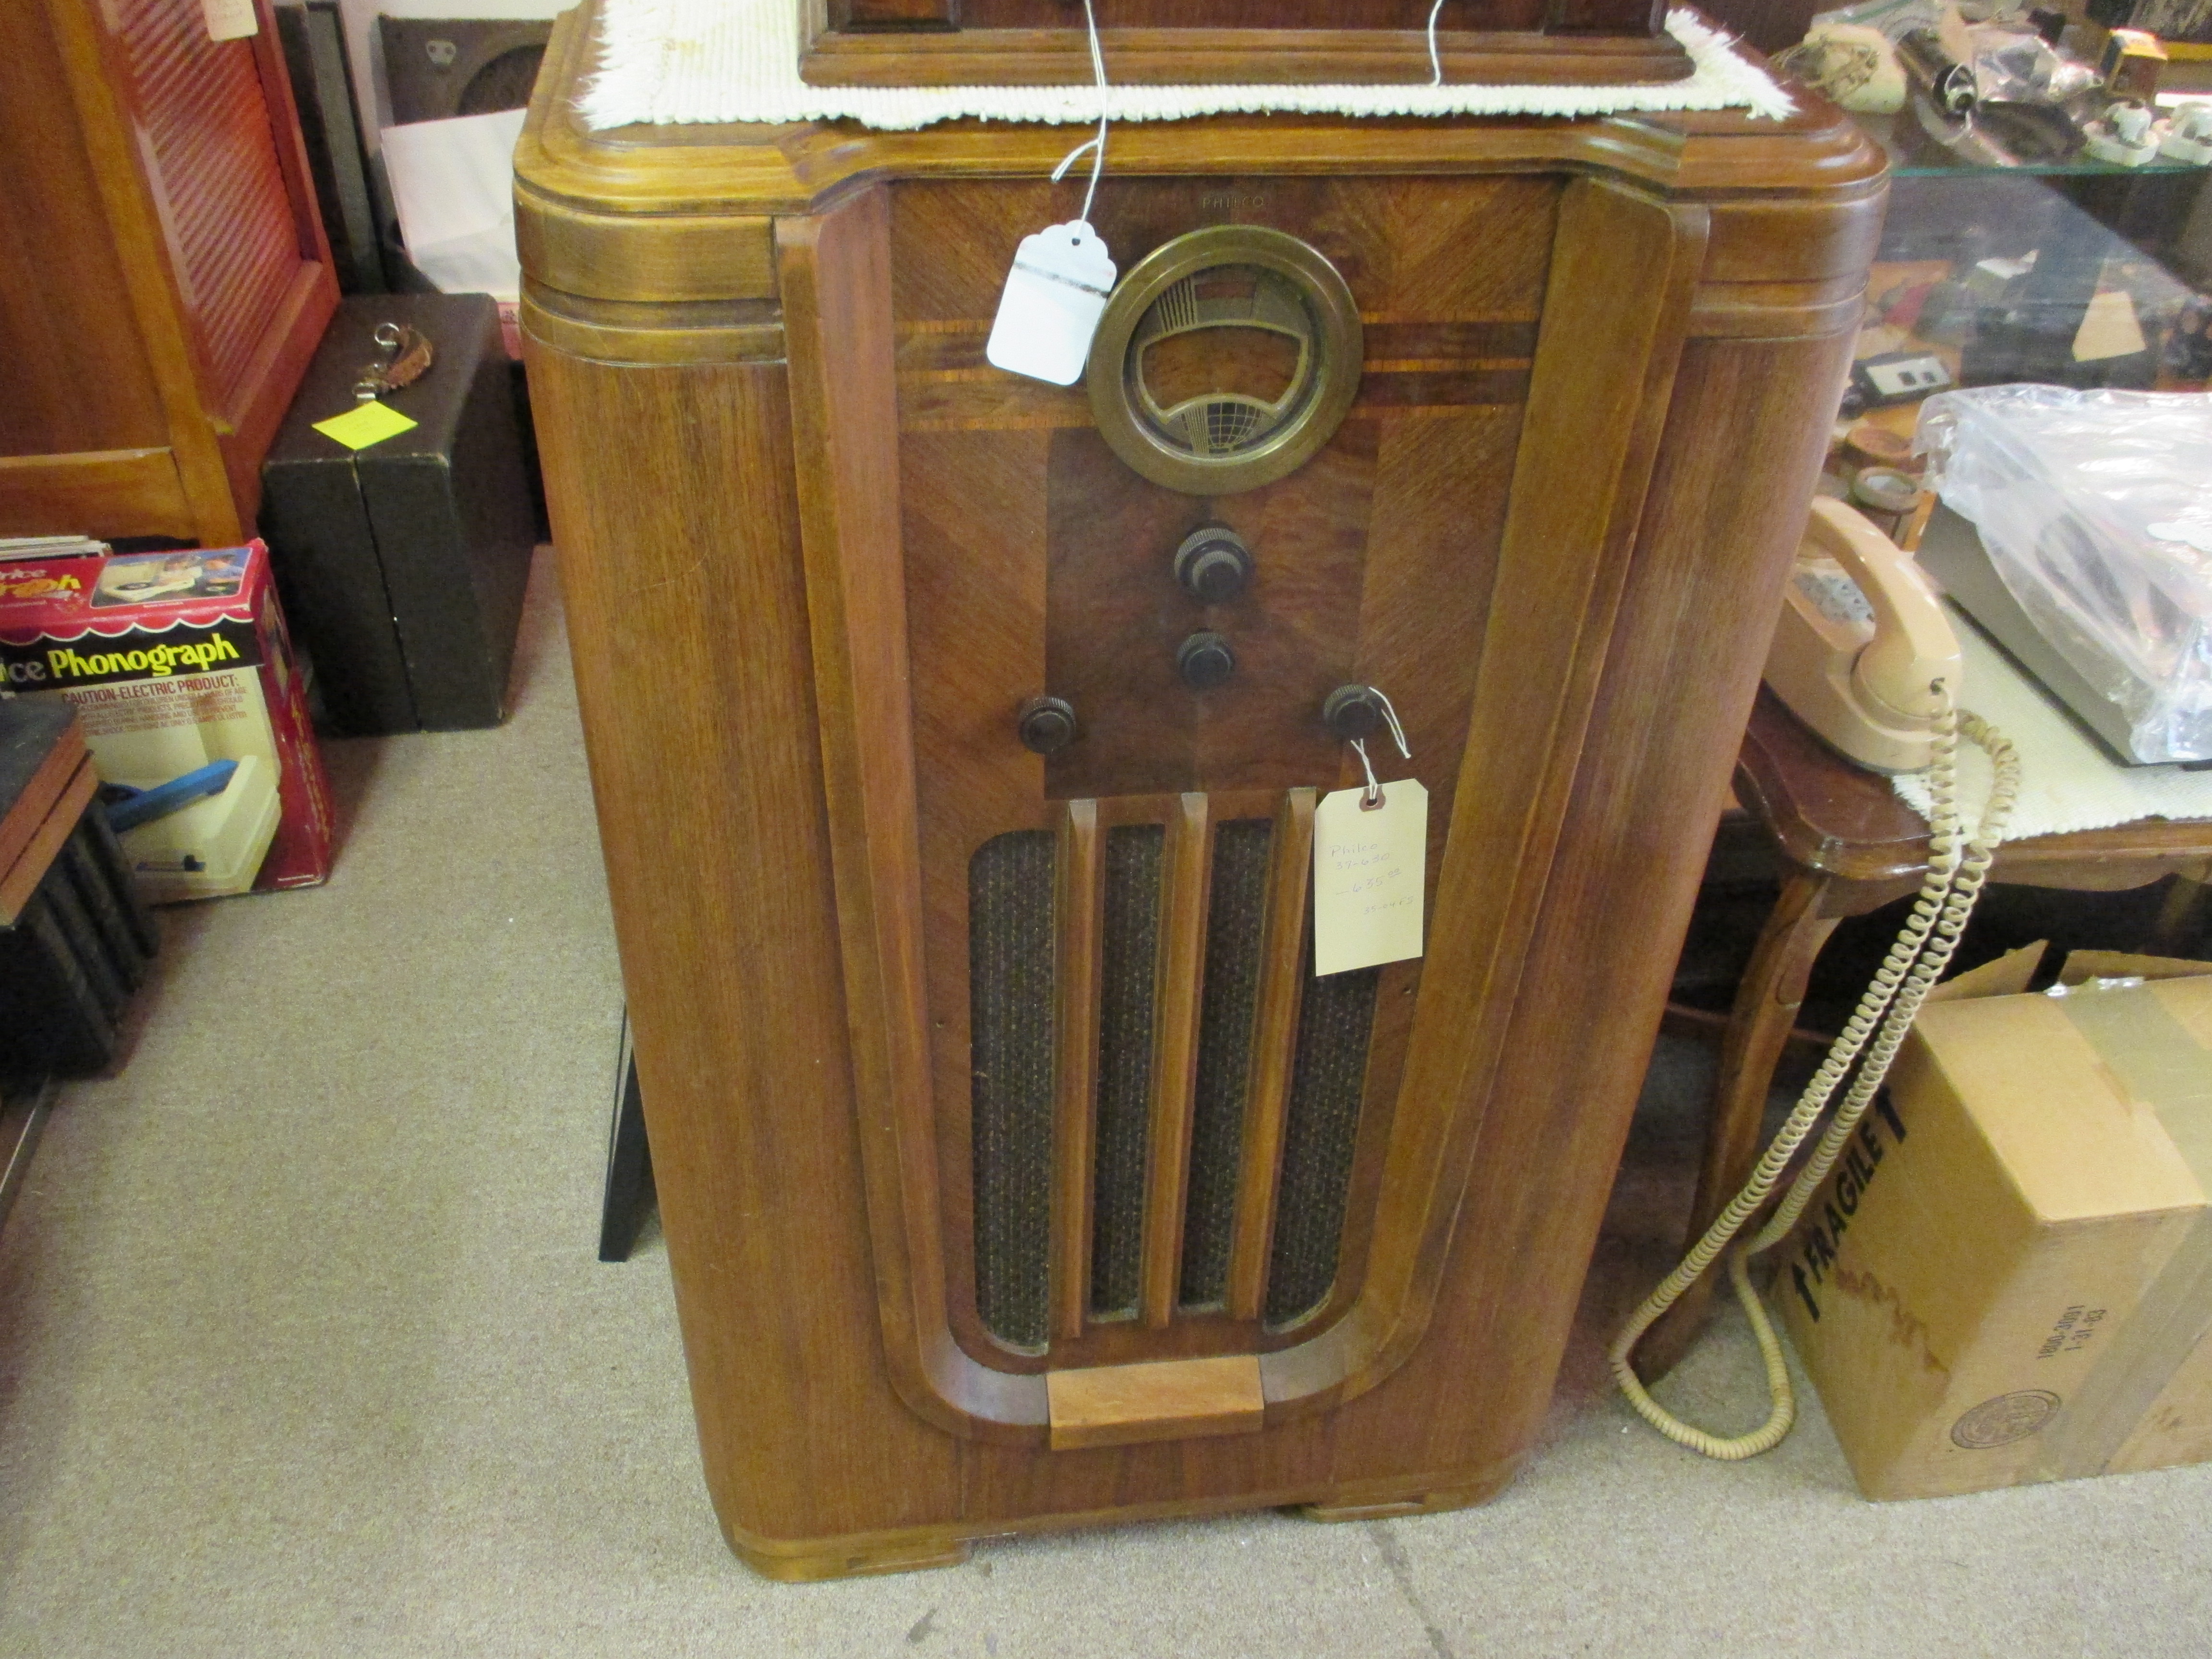 Philco 37-630 console radio 1937, fully restored $635